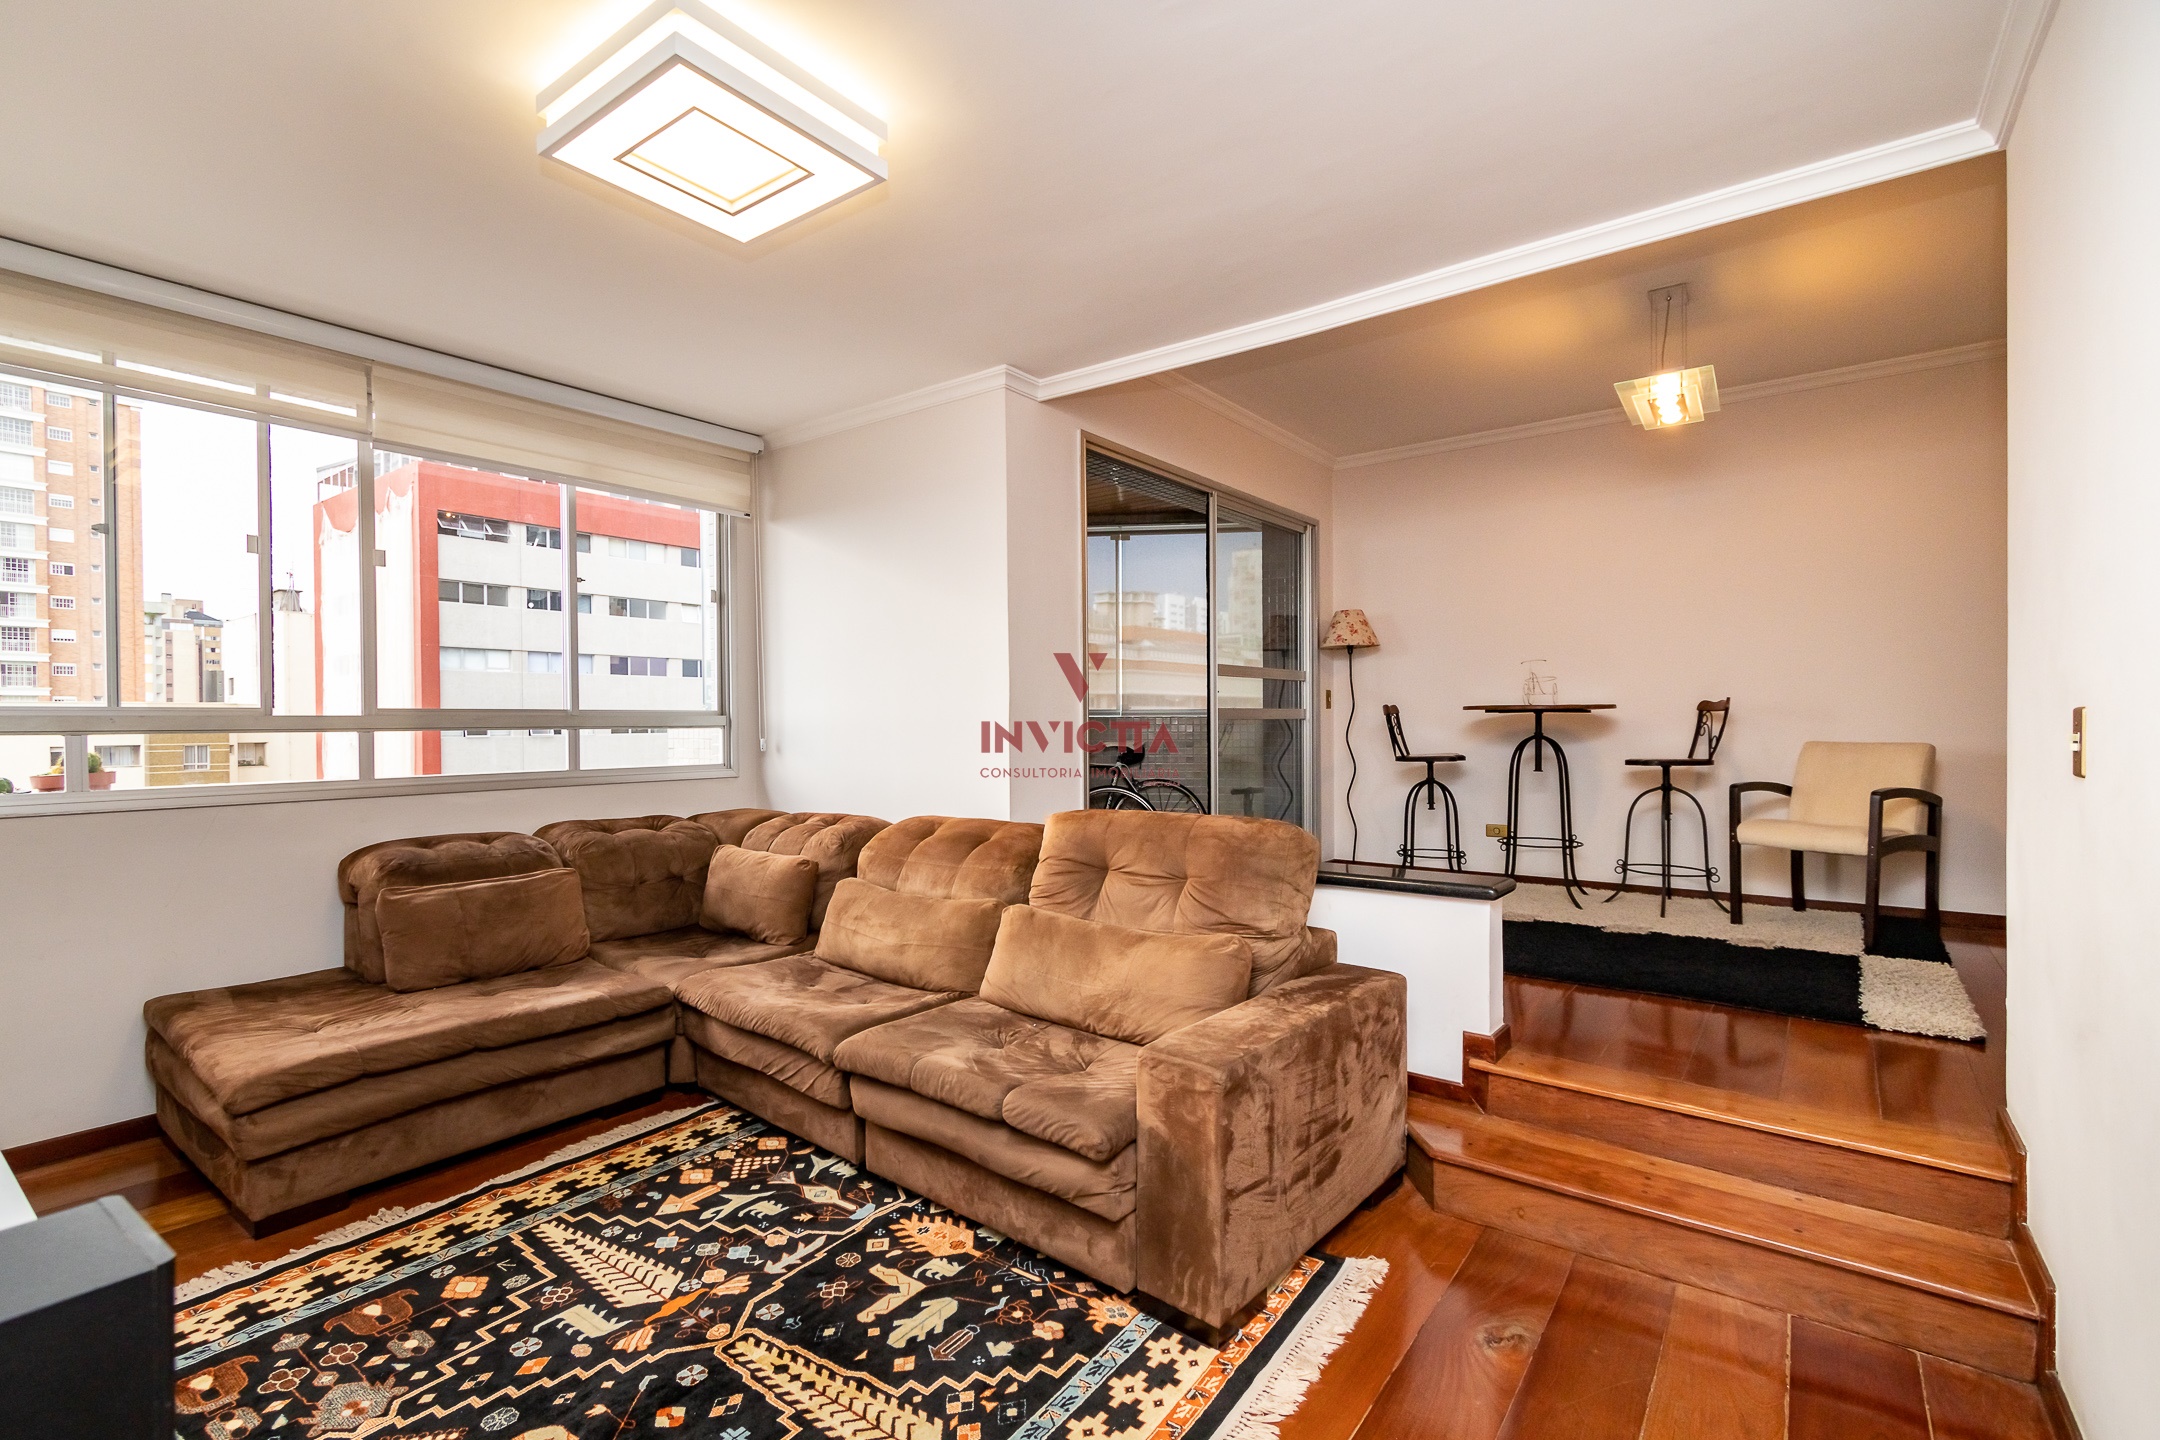 foto 3 do imóvel: apartamento a venda em Curitiba referência: AA 1654